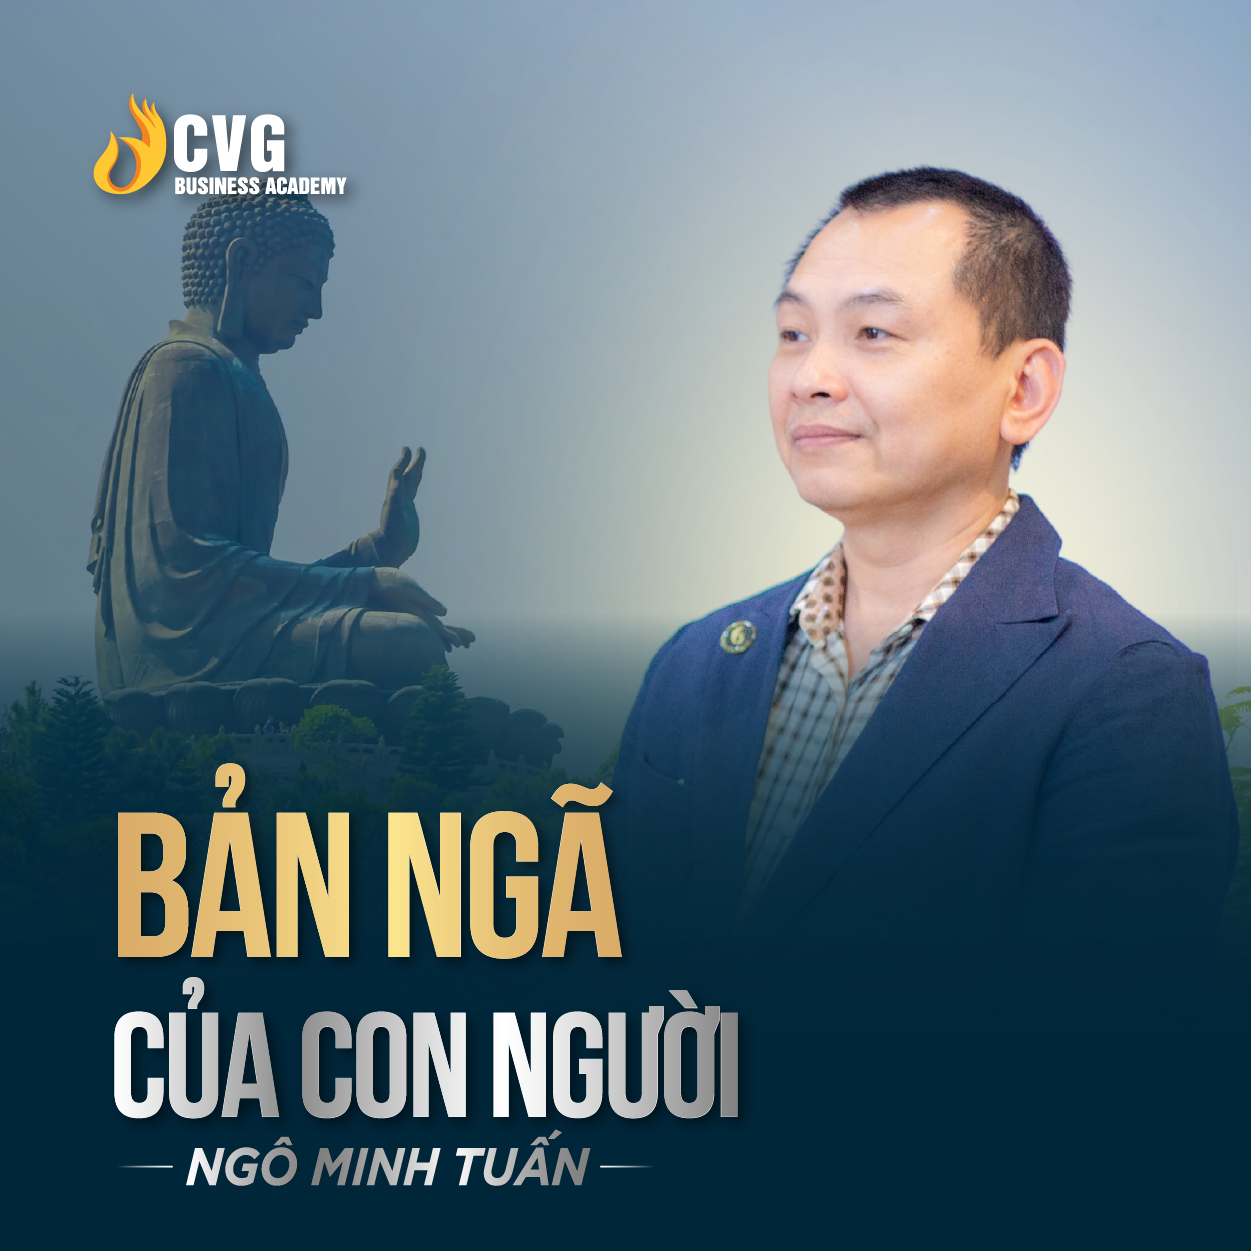 BẢN NGÃ CỦA CON NGƯỜI | Ngô Minh Tuấn | Học viện CEO Việt Nam Global